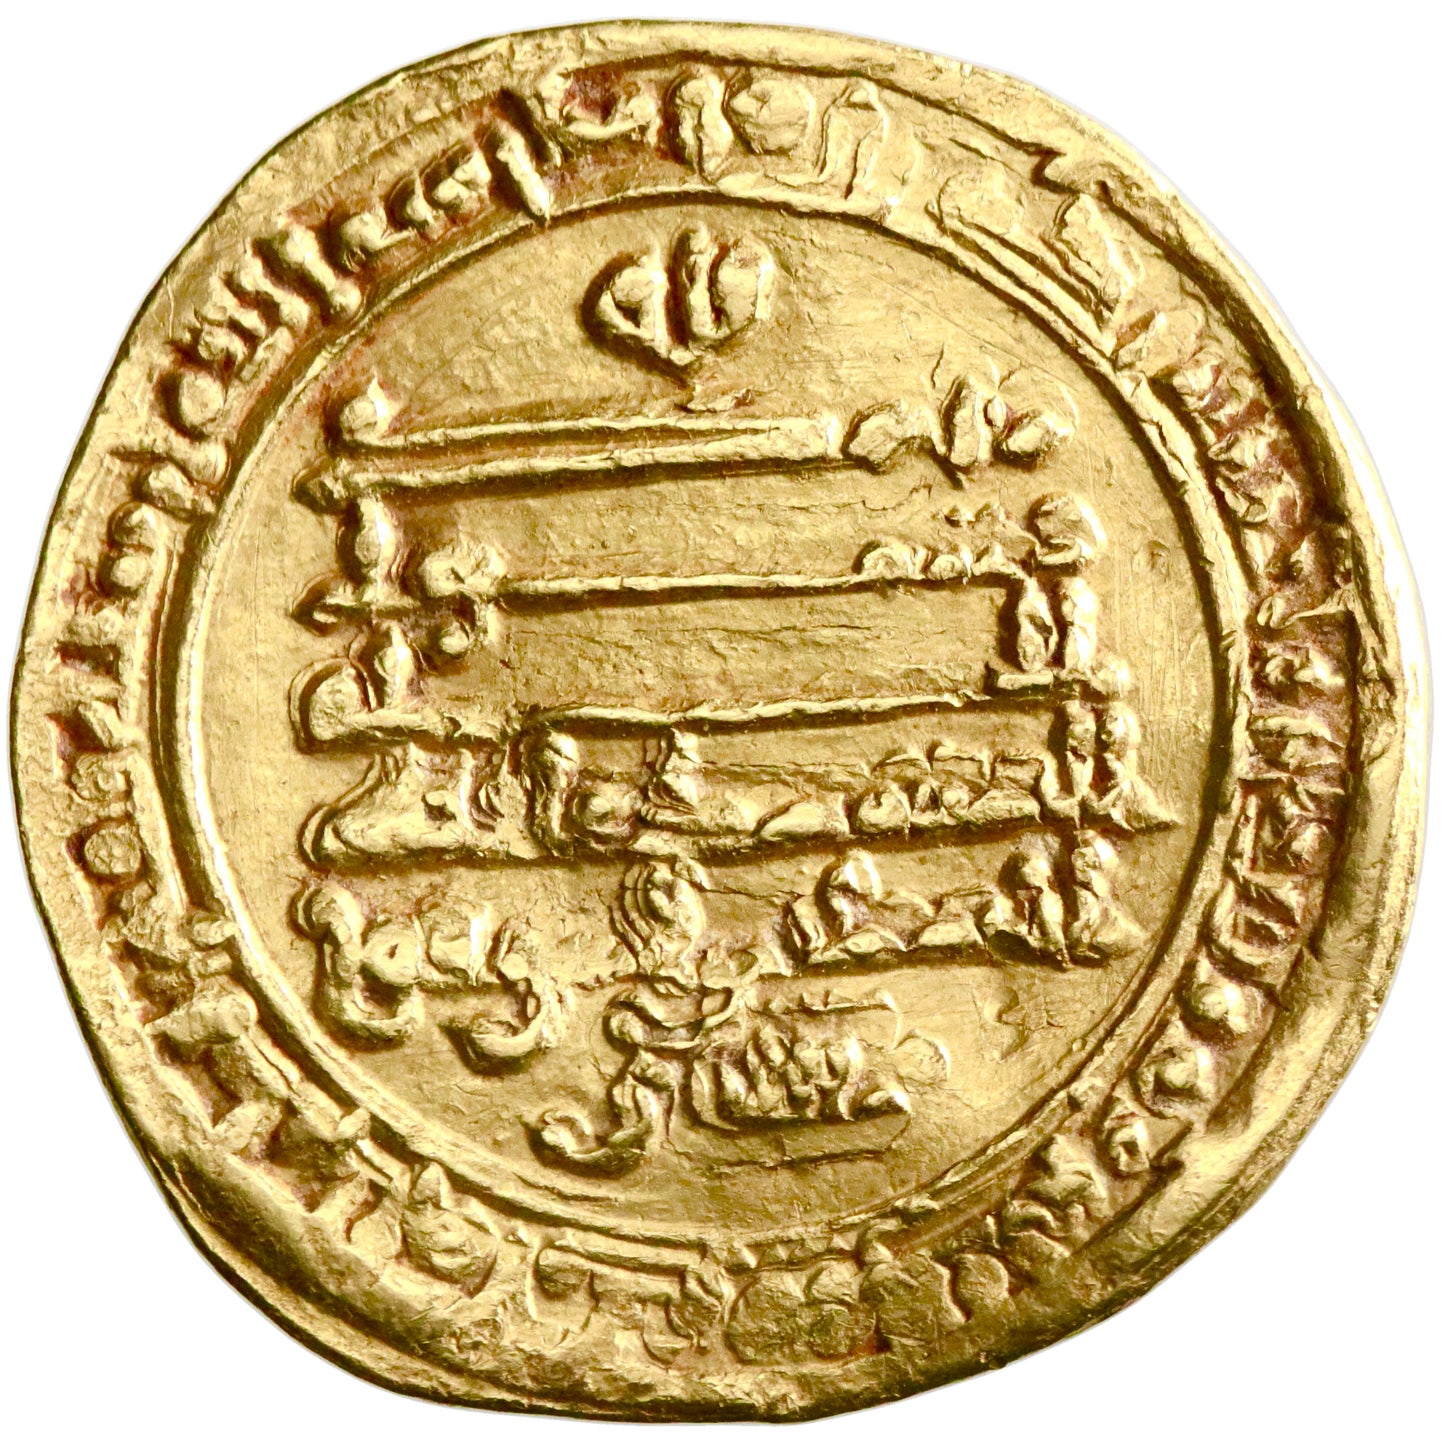 Abbasid, al-Mu'tamid, gold dinar, al-Rafiqa mint, AH 274, swastika, citing al-Mufawwid and Ahmad ibn al-Muwaffaq